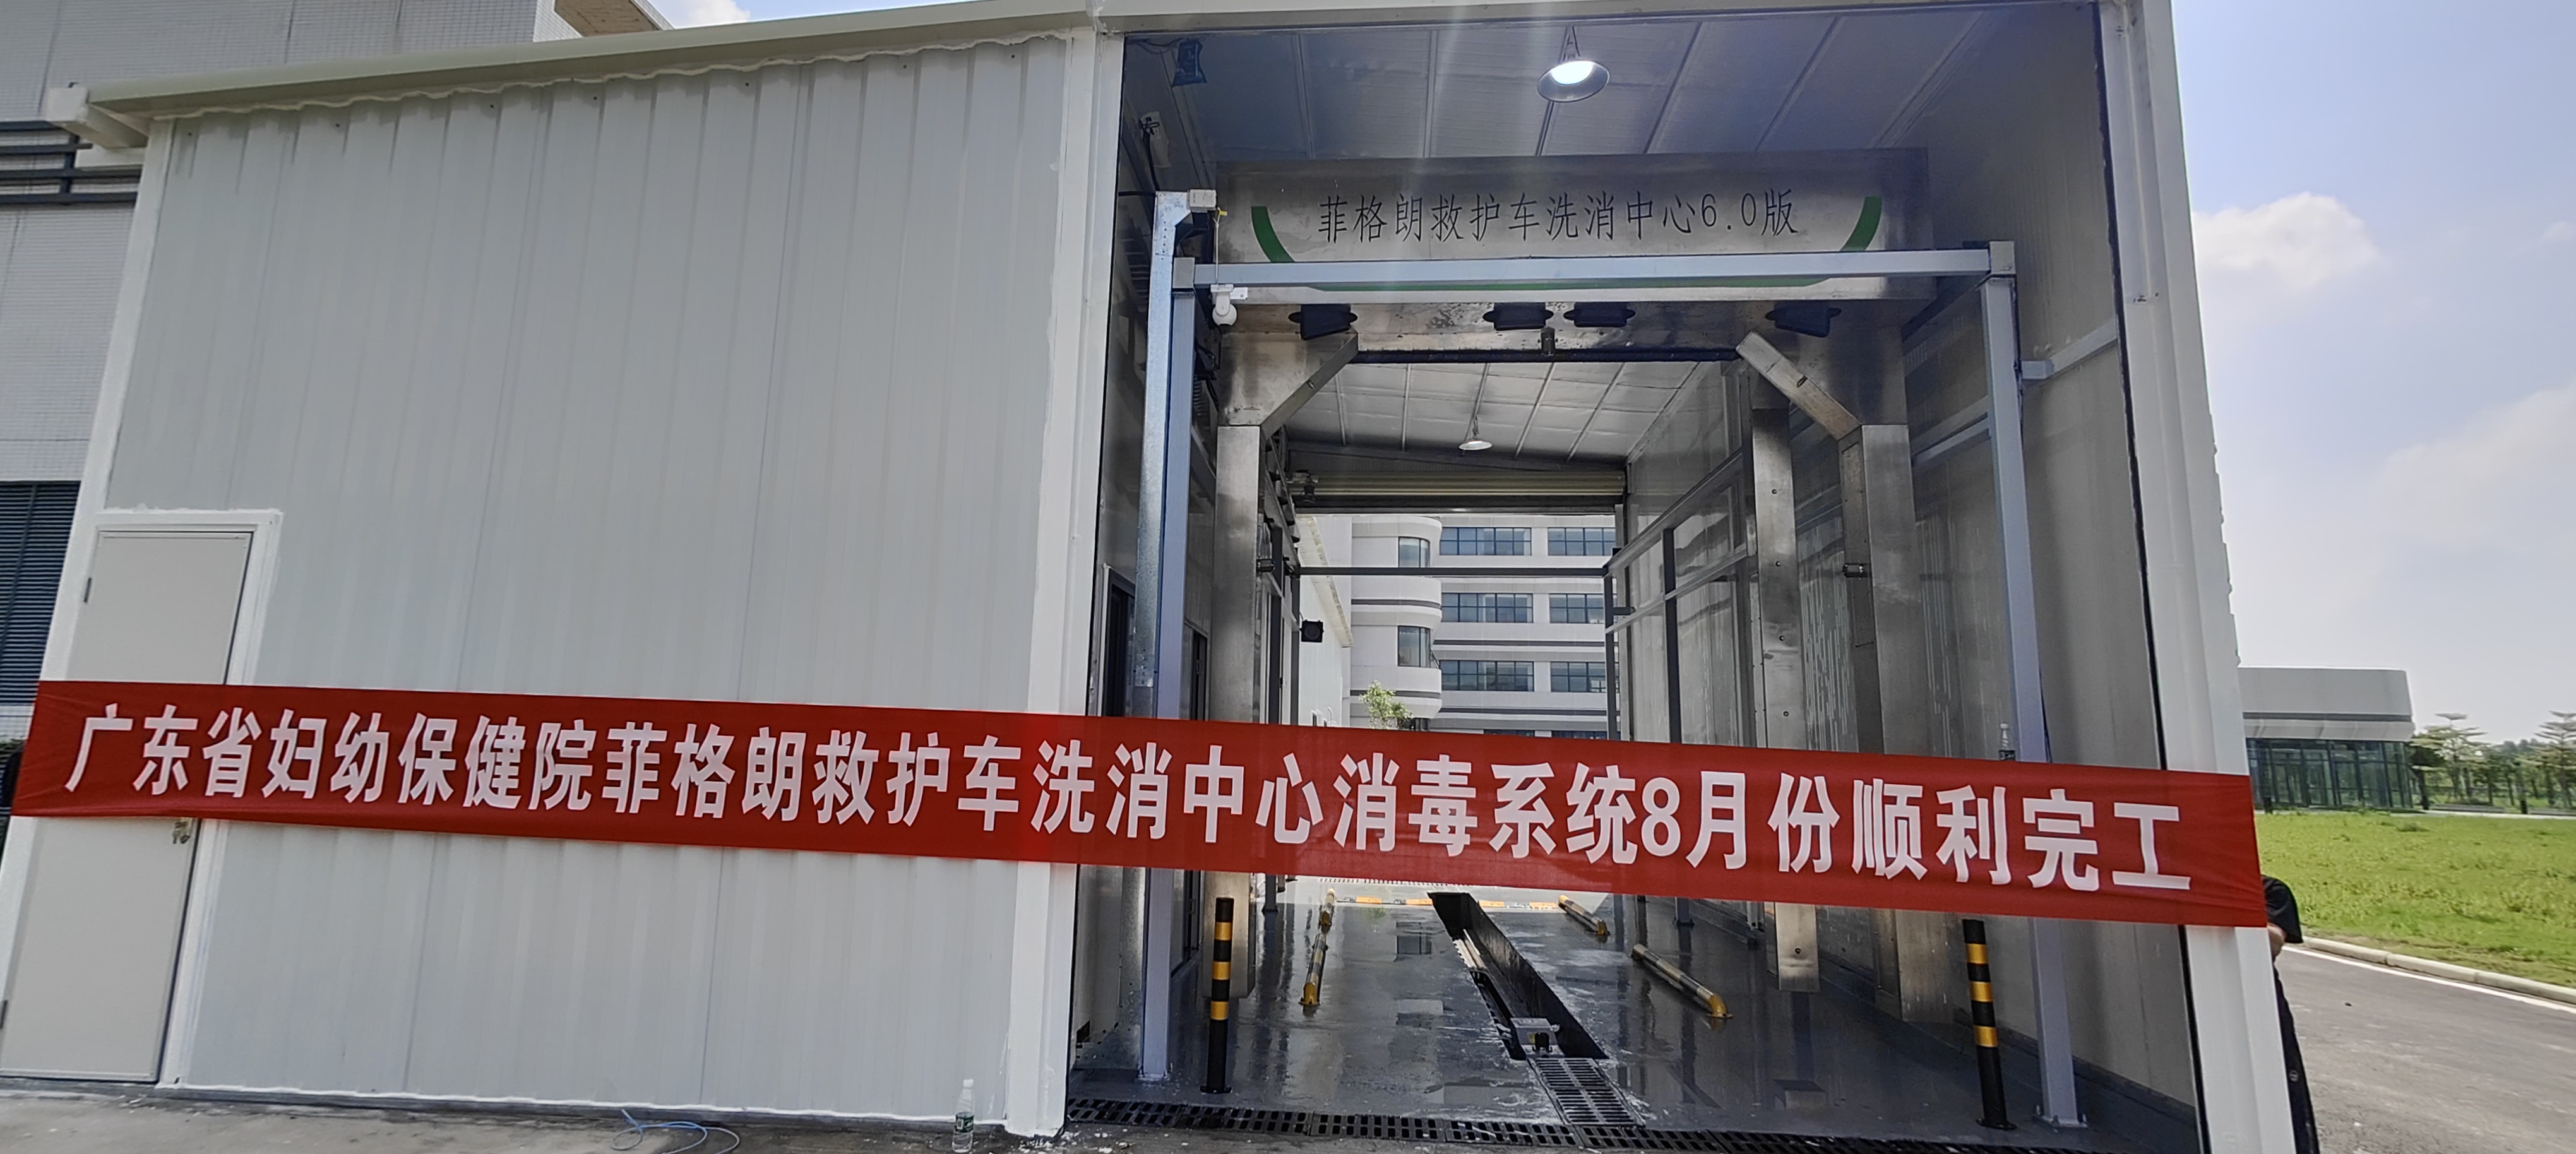 广东省妇幼保健院菲格朗救护车洗消中心系统投入使用